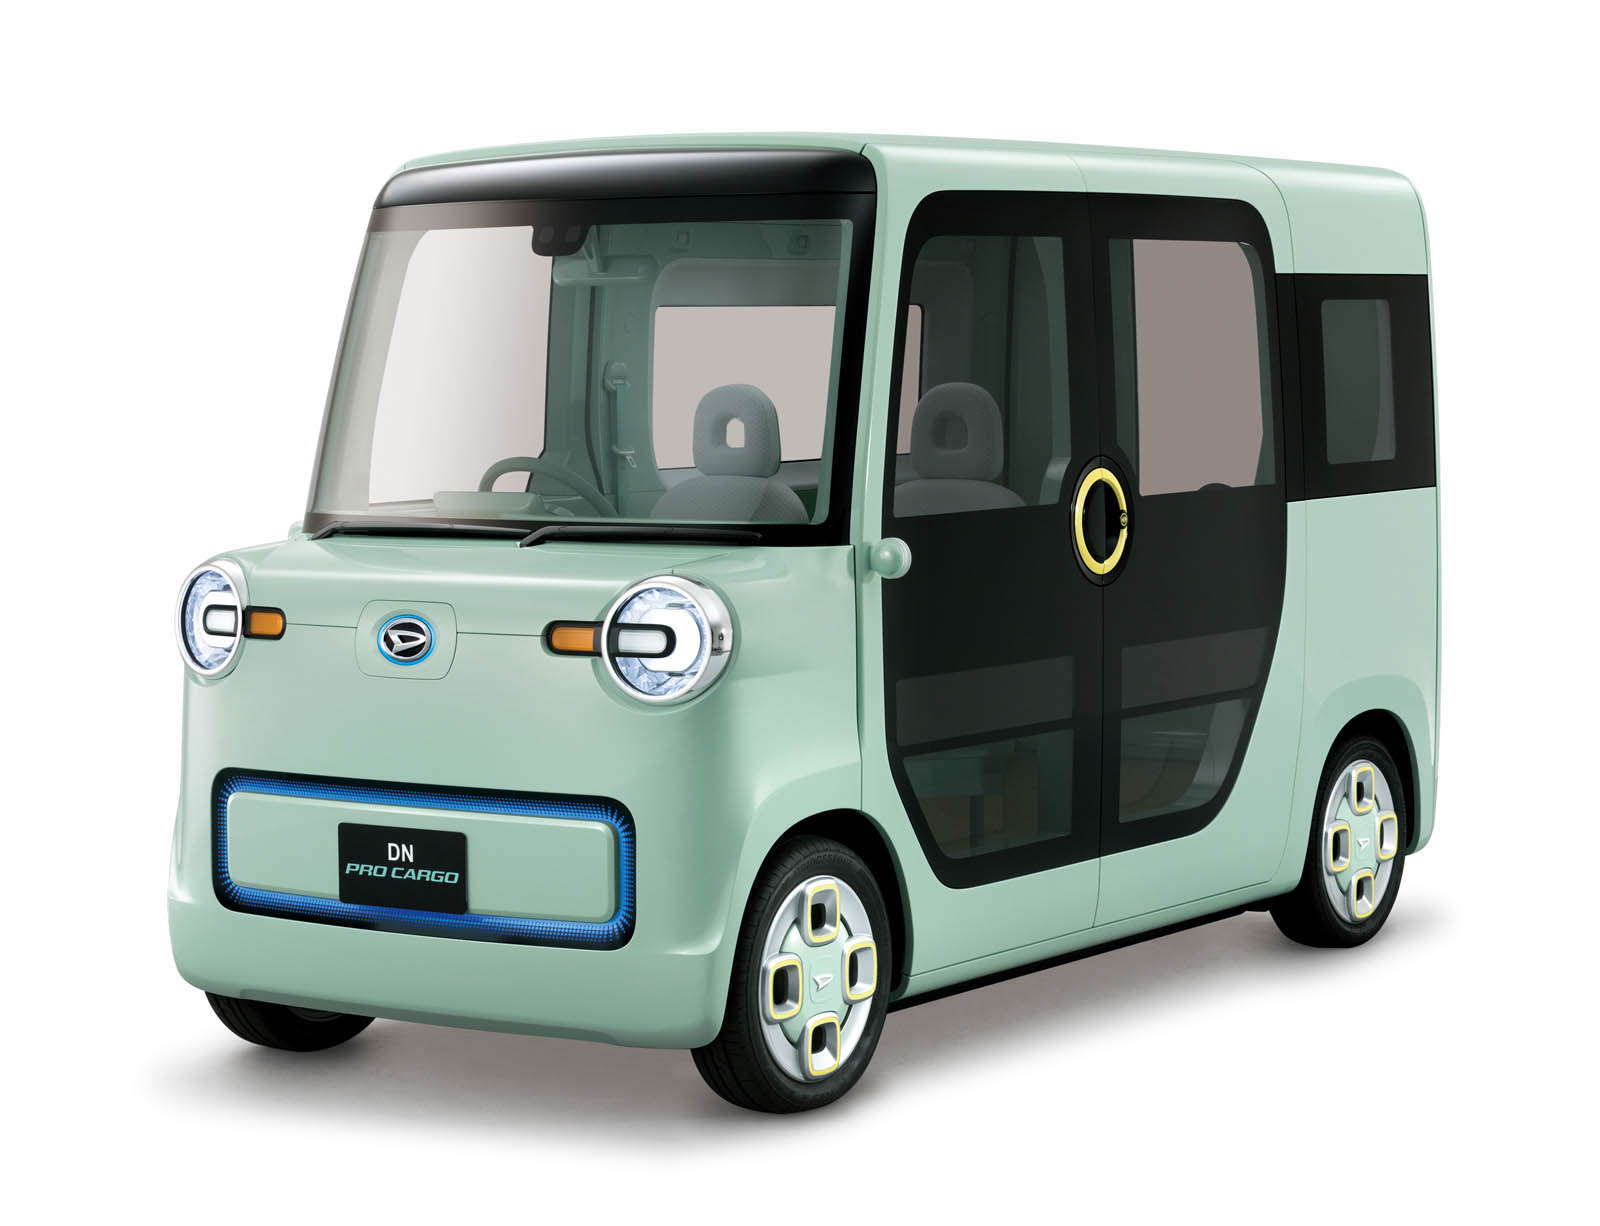 Daihatsus Tokyo Concepts Blend Retro And Futuristic 